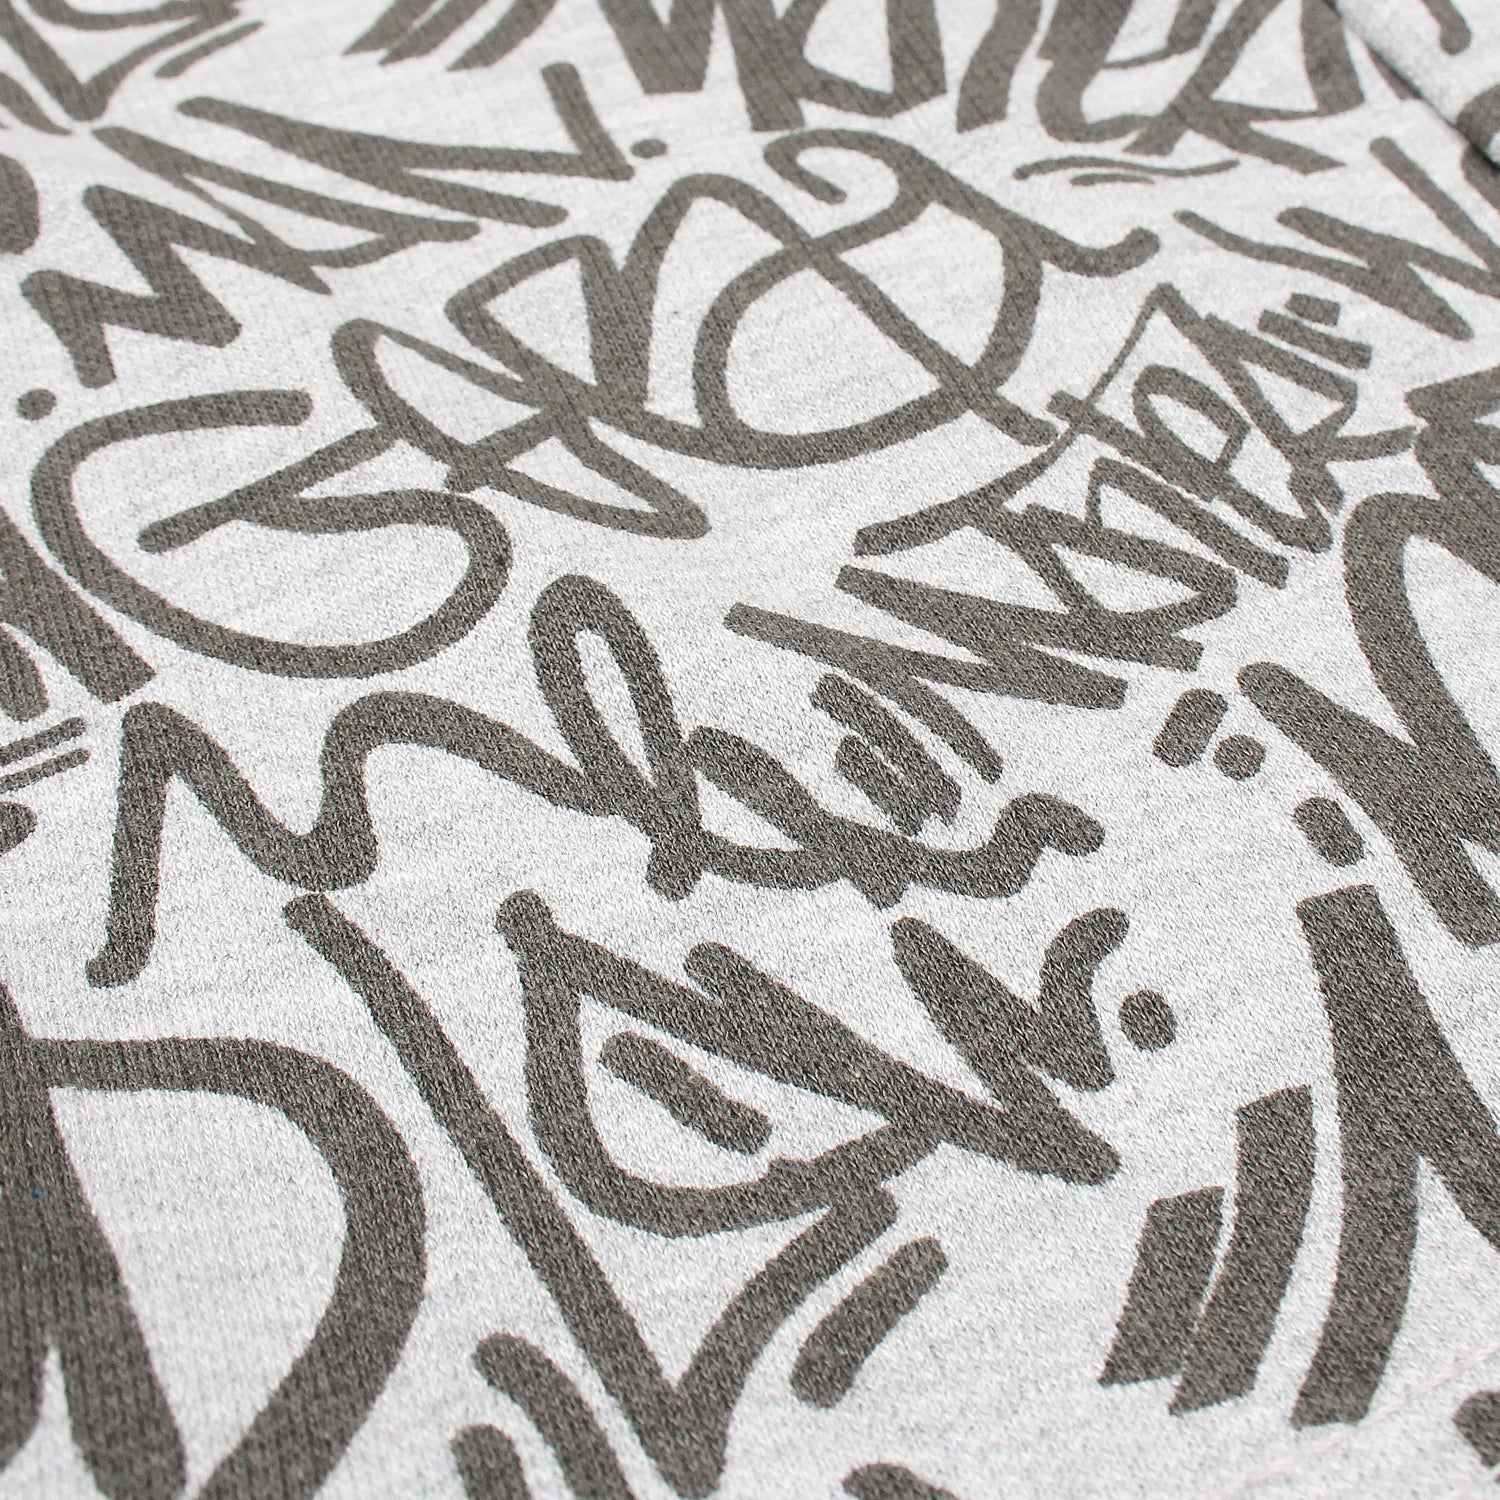 All Over Graffiti Letters Printed Short-KSHR-2094